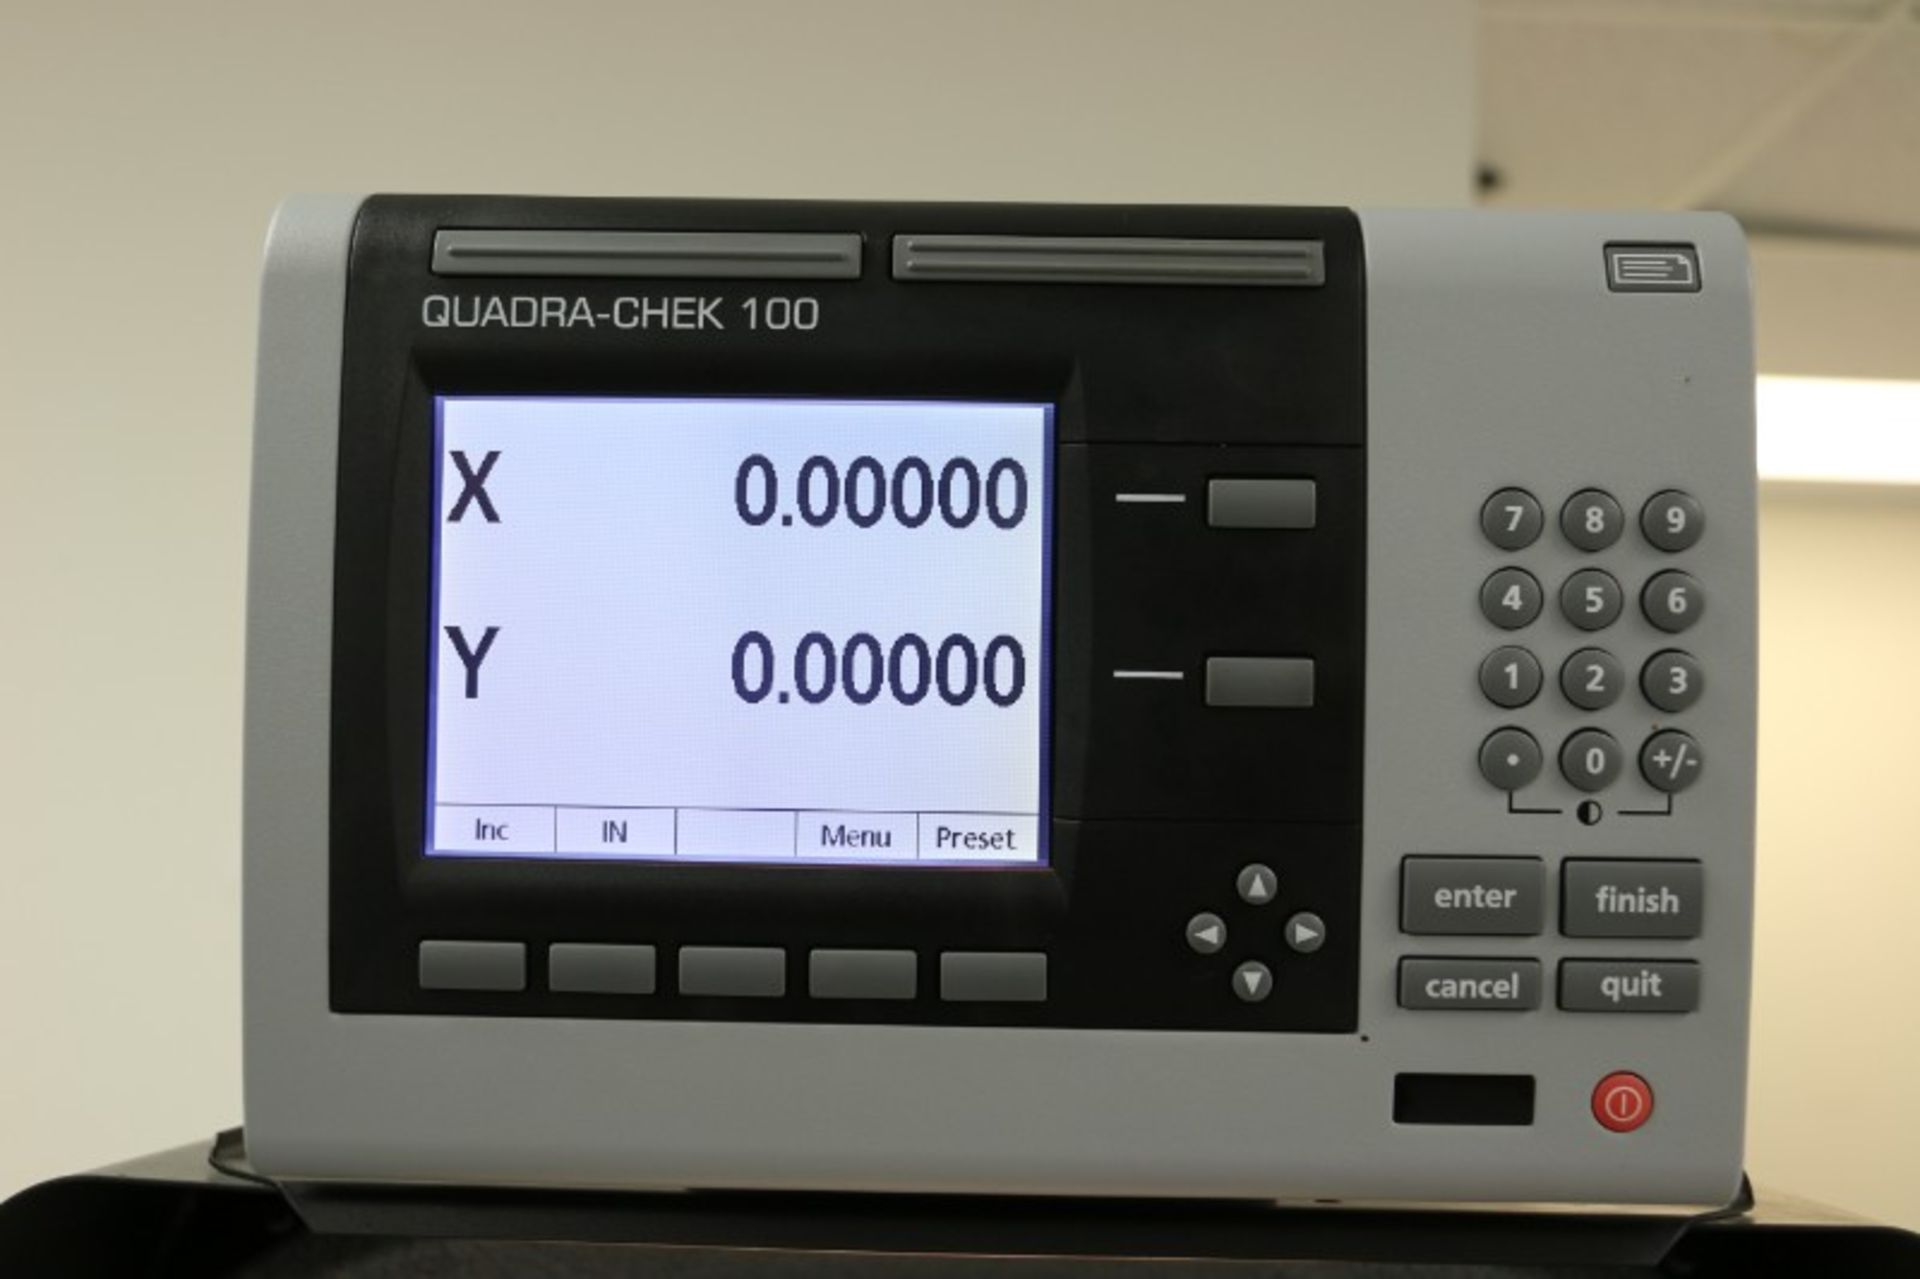 Scherr Tumico Comparator with Quadra Check 100 DRO, S/N R073502 - Image 7 of 9